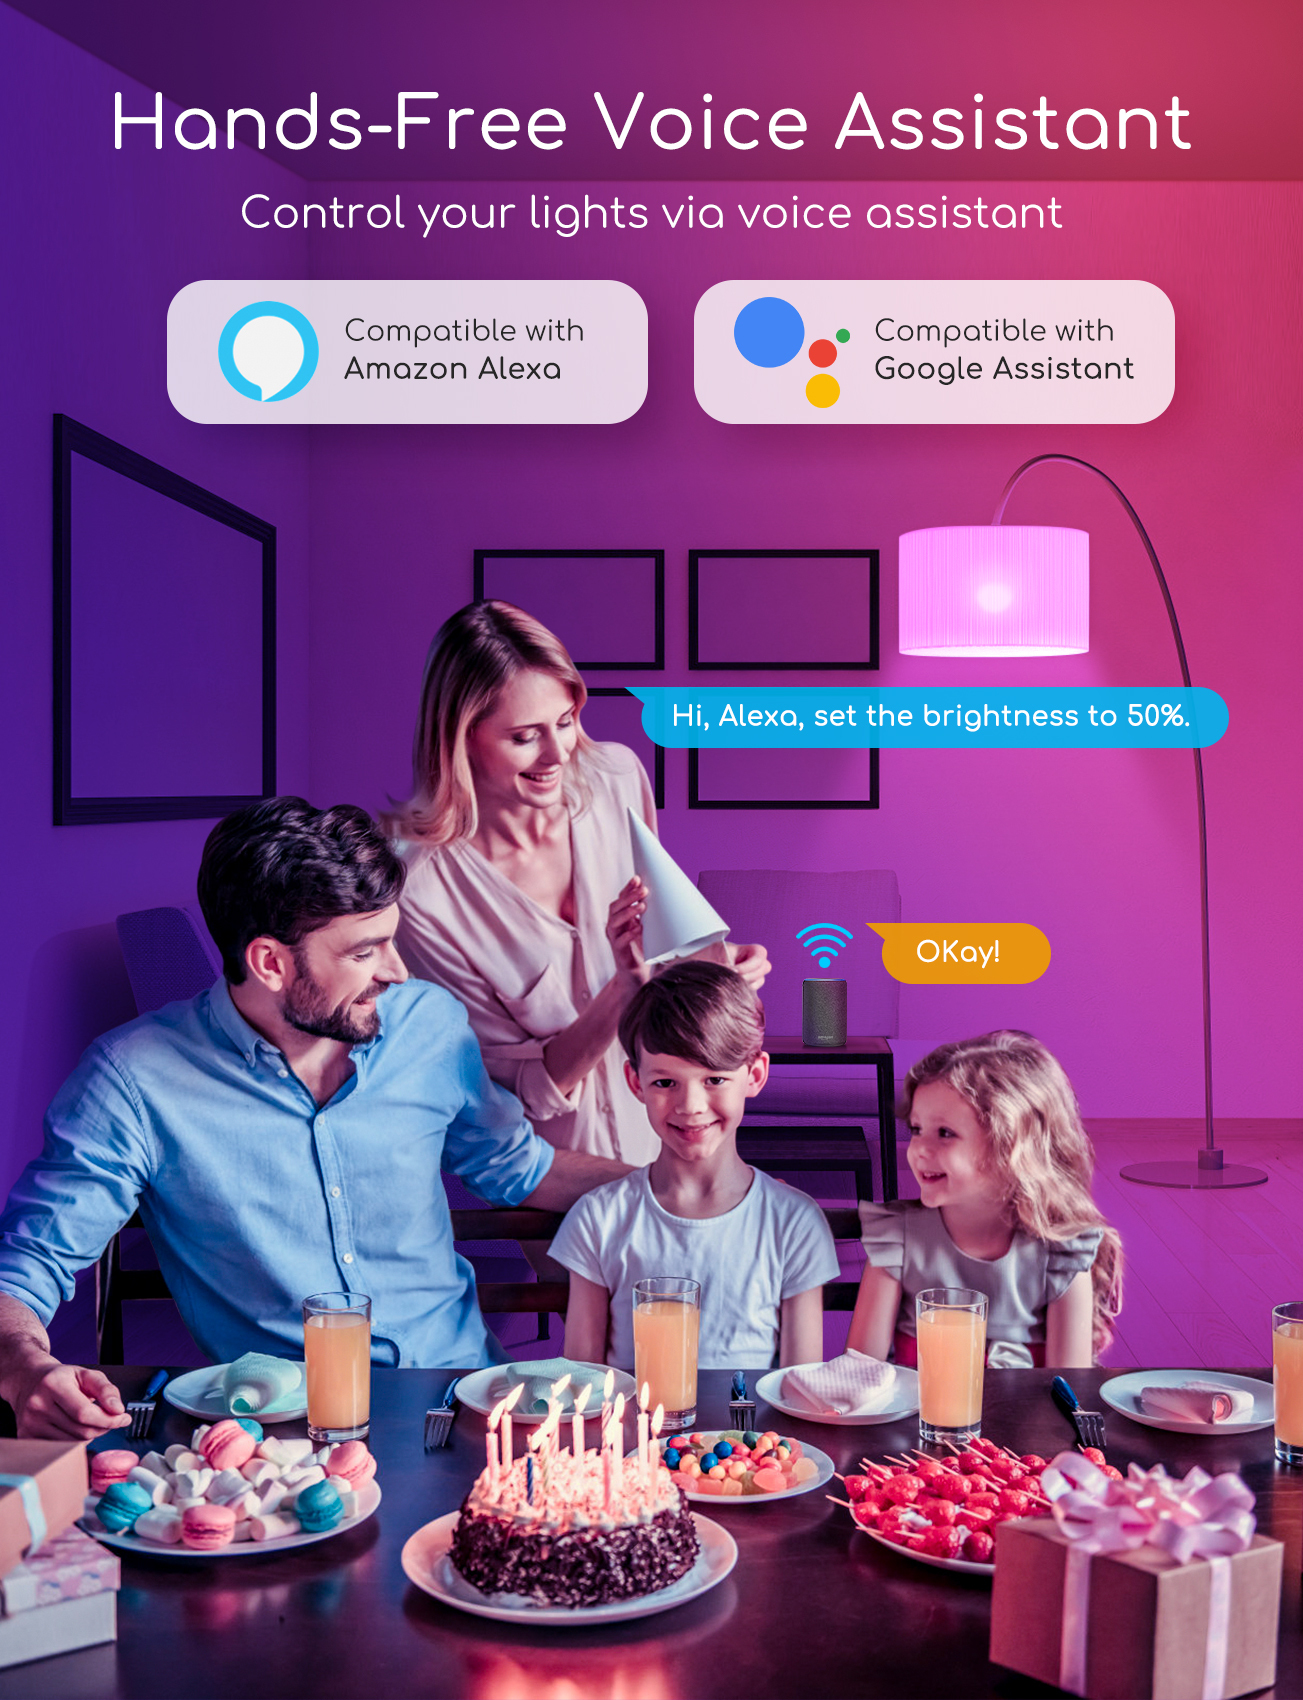 Aigostar Alexa Glühbirnen E27 Wlan Smart LED-Lampe, 5W Mehrfarbige Dimmbare , App Steuern Kompatibel mit Alexa und Google Home, Fernbedienung, Sprachsteuerung, kein Hub erforderlich, 2.4GHz (5 Packs)